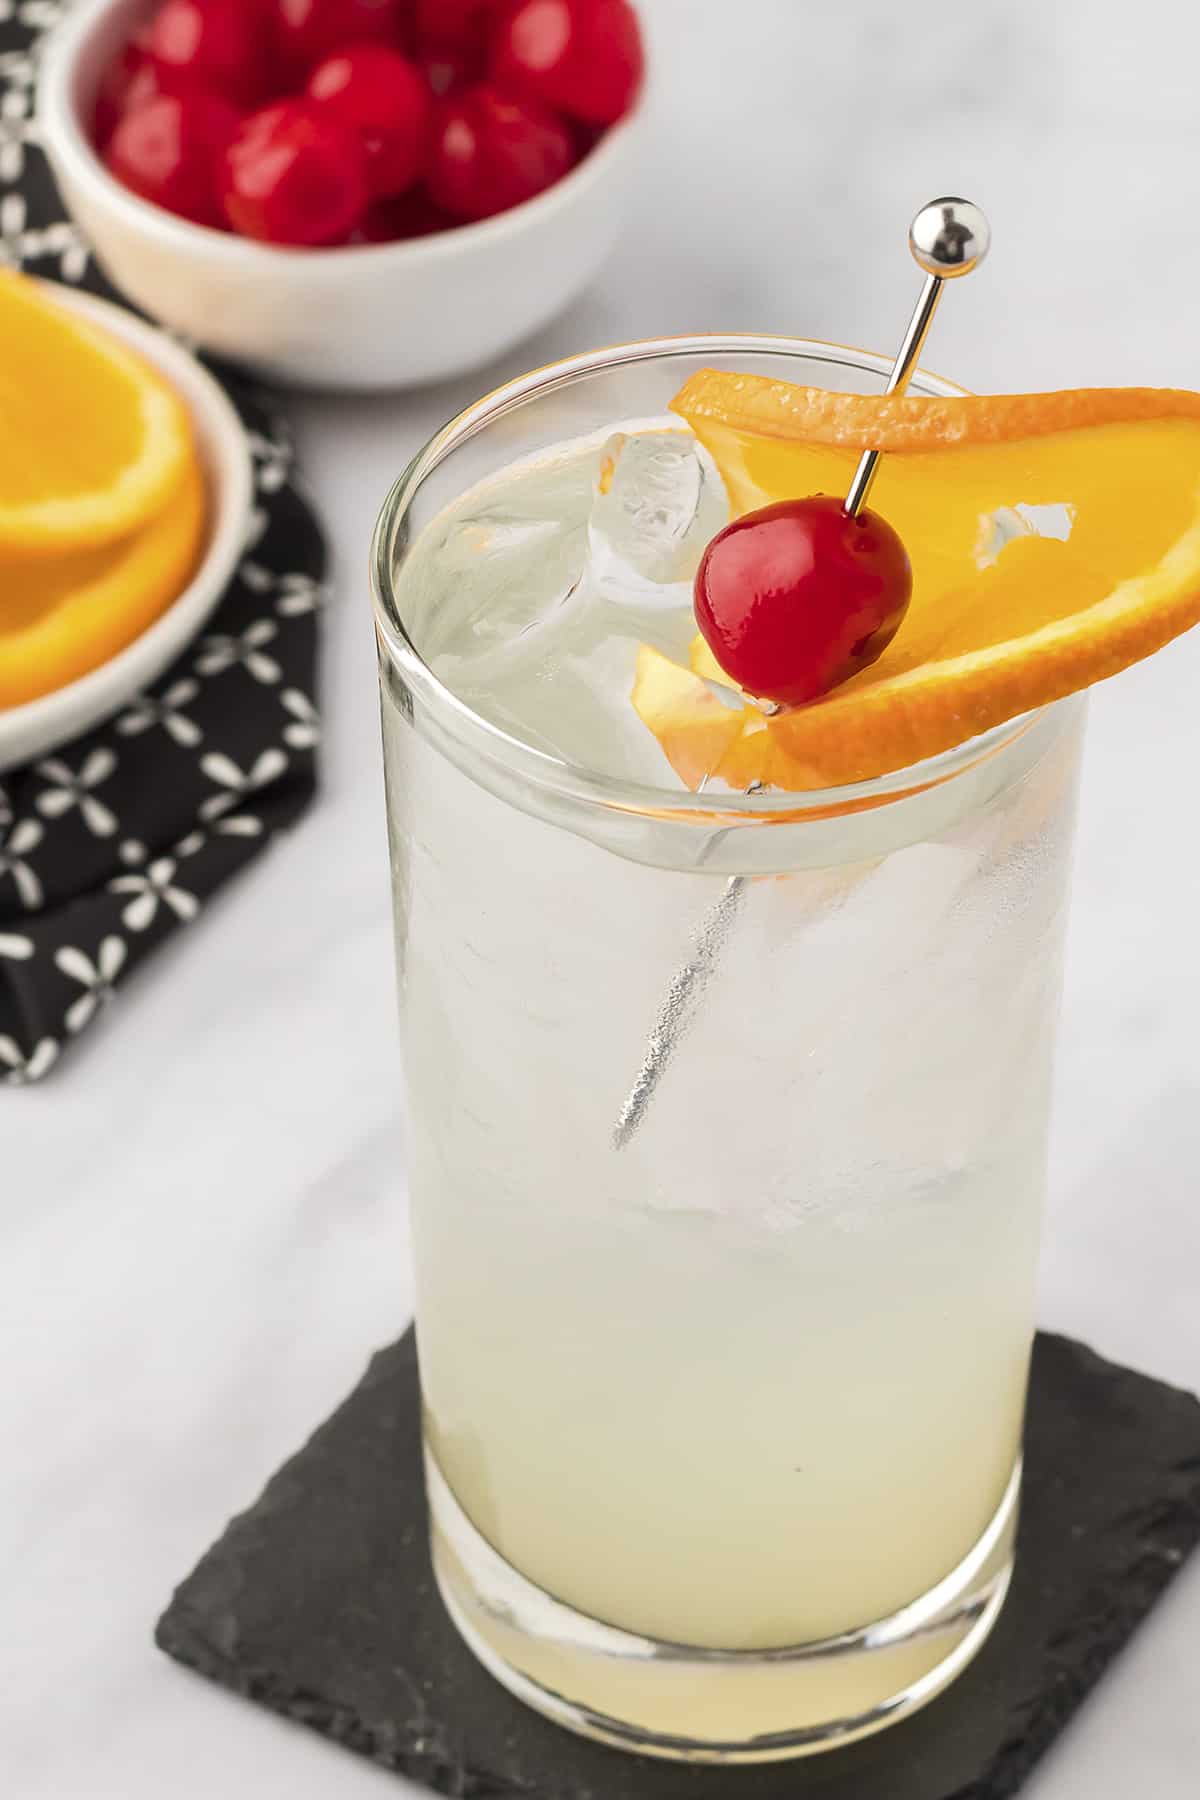 Vodka collins in glass with orange garnish.